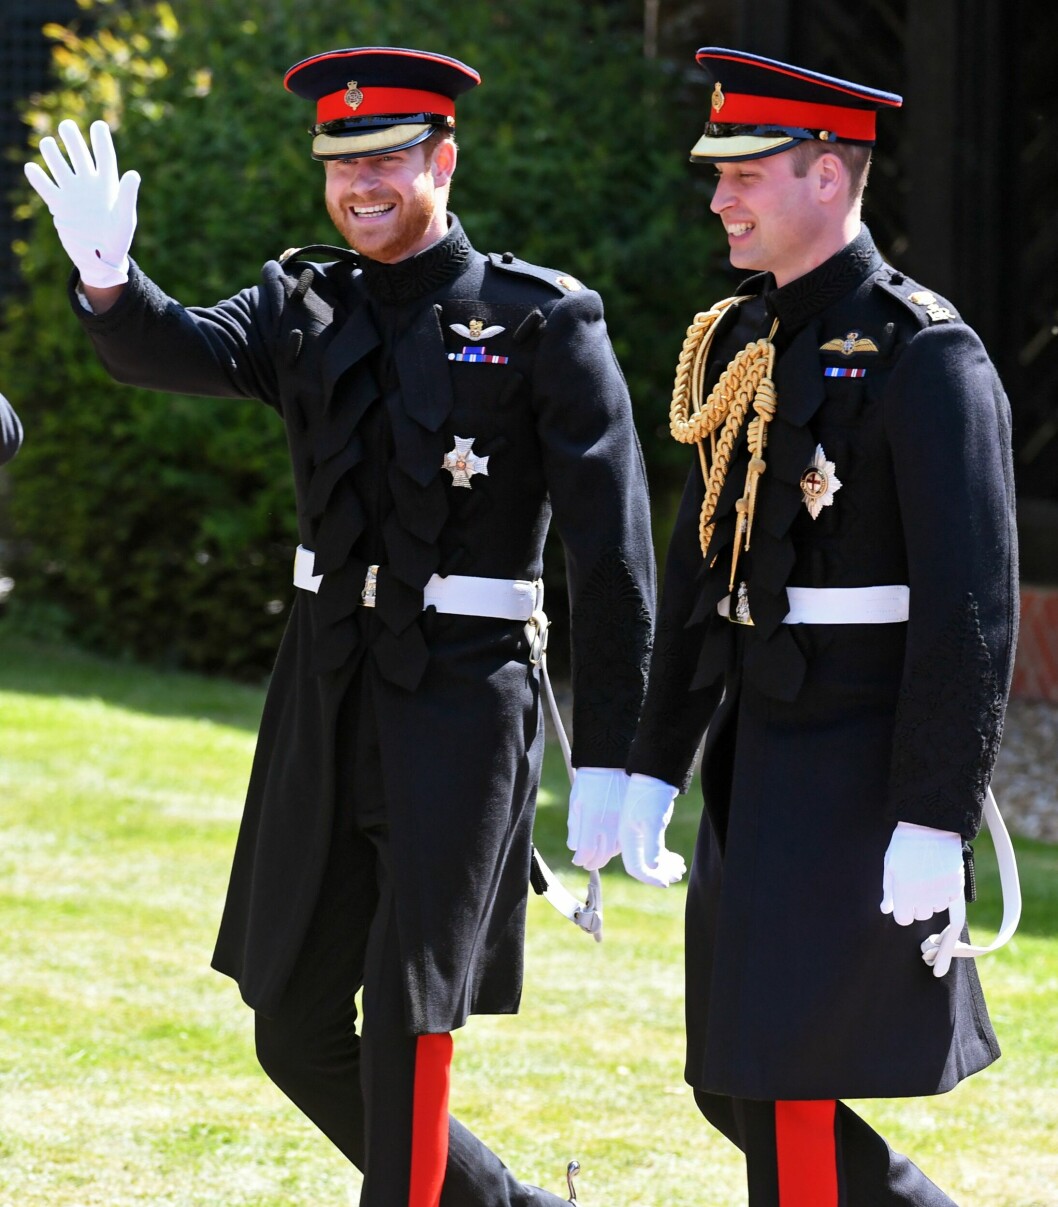 Prins Harry och prins William